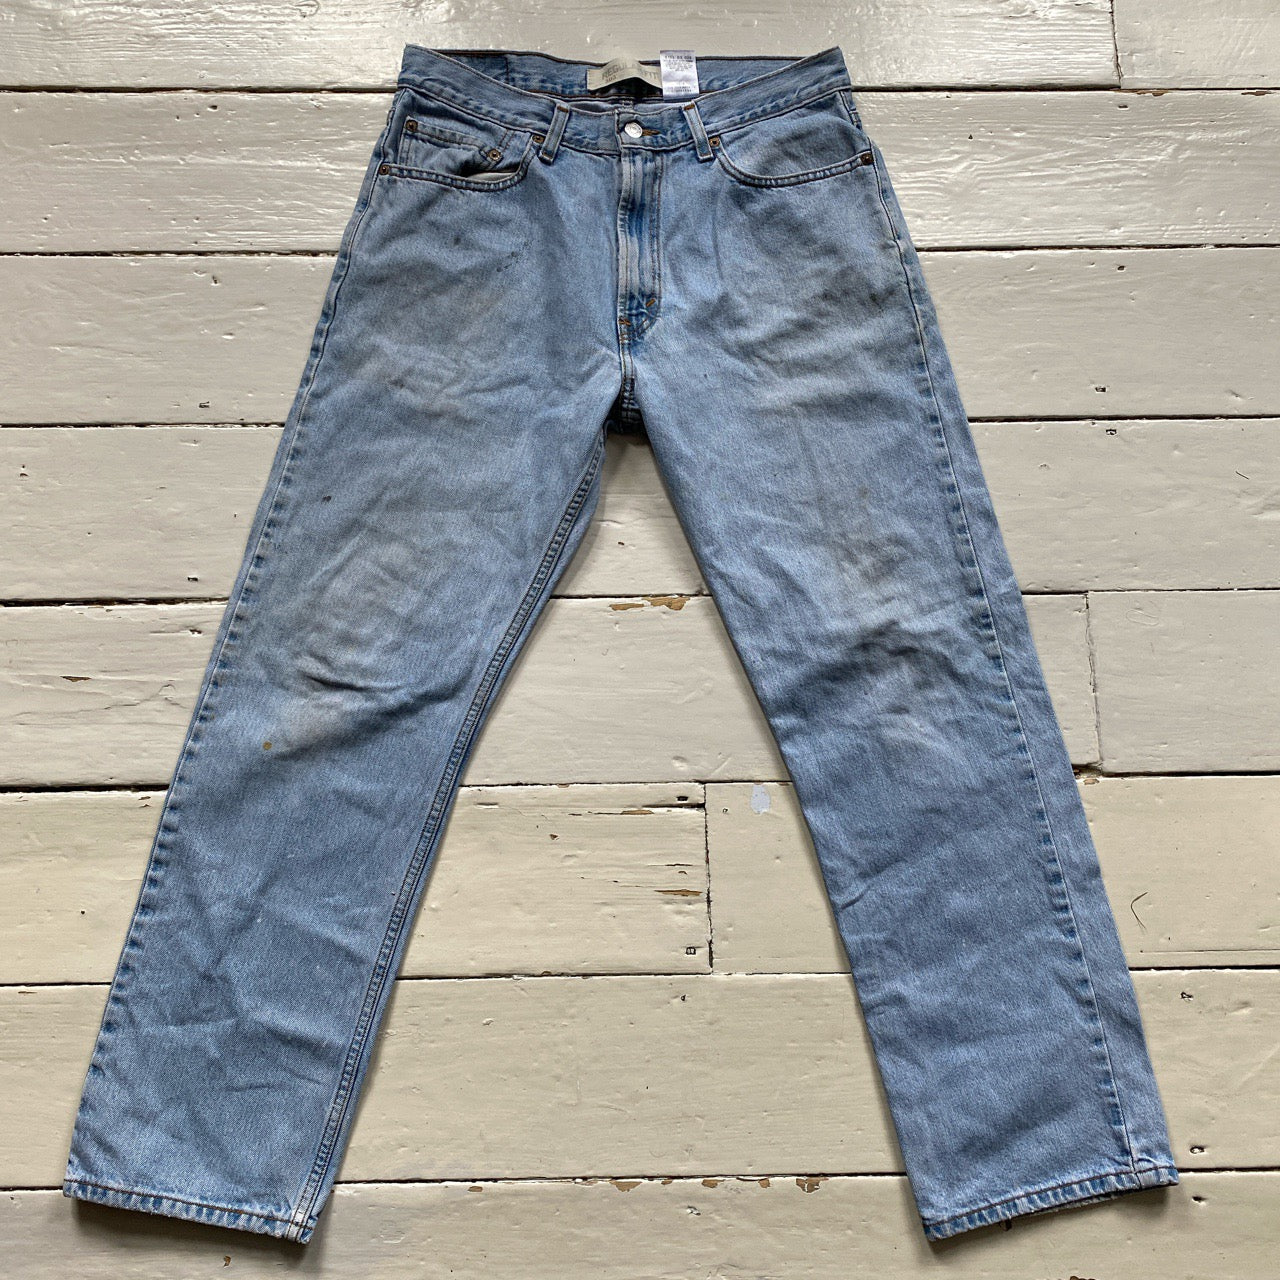 Levis 505 Light Blue Jeans (34/30)